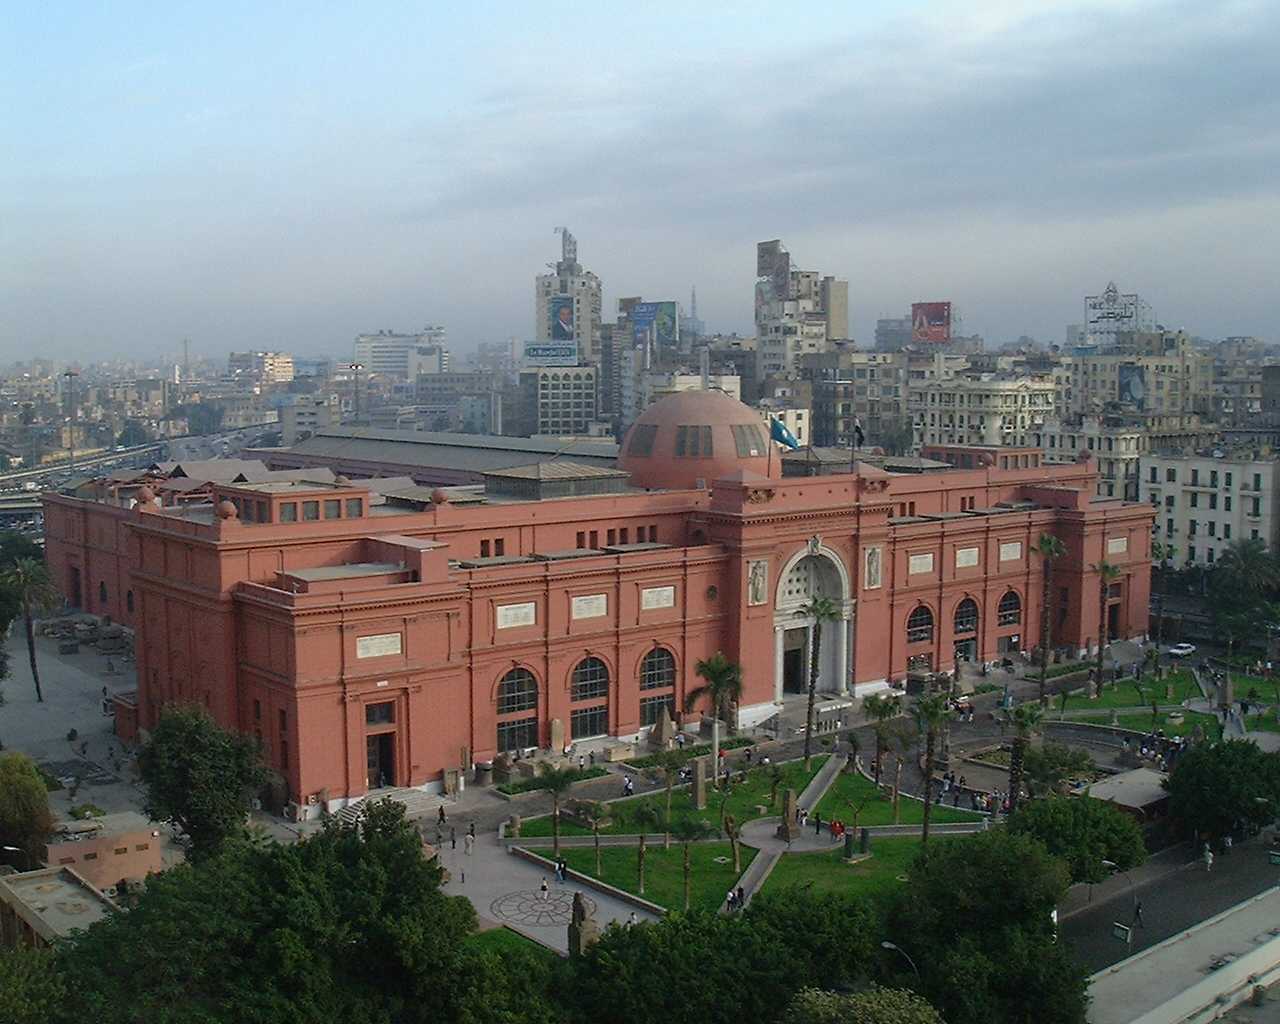 Национальный музей в каире египет - что можно увидеть, фото и описание